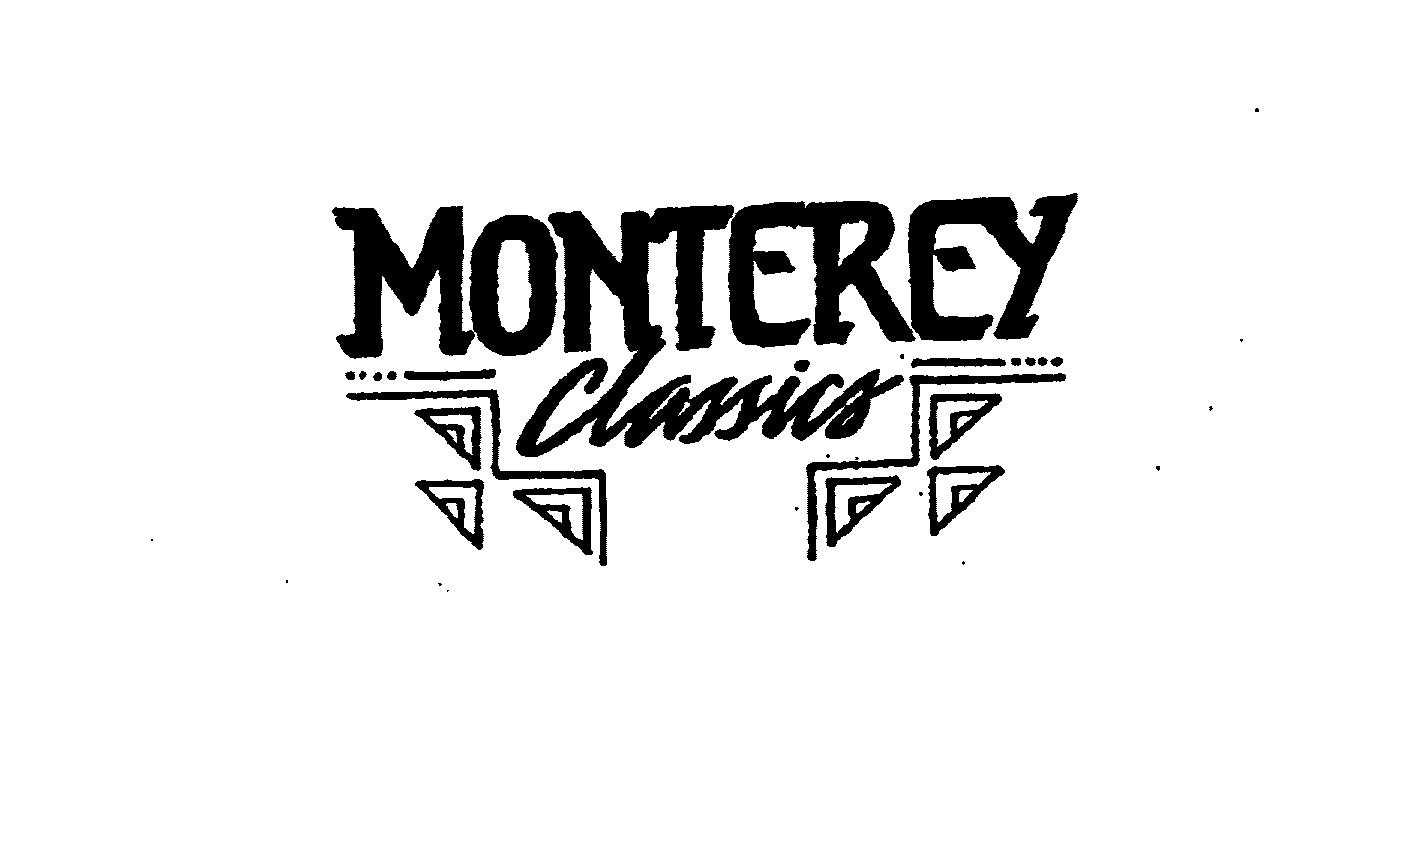  MONTEREY CLASSICS